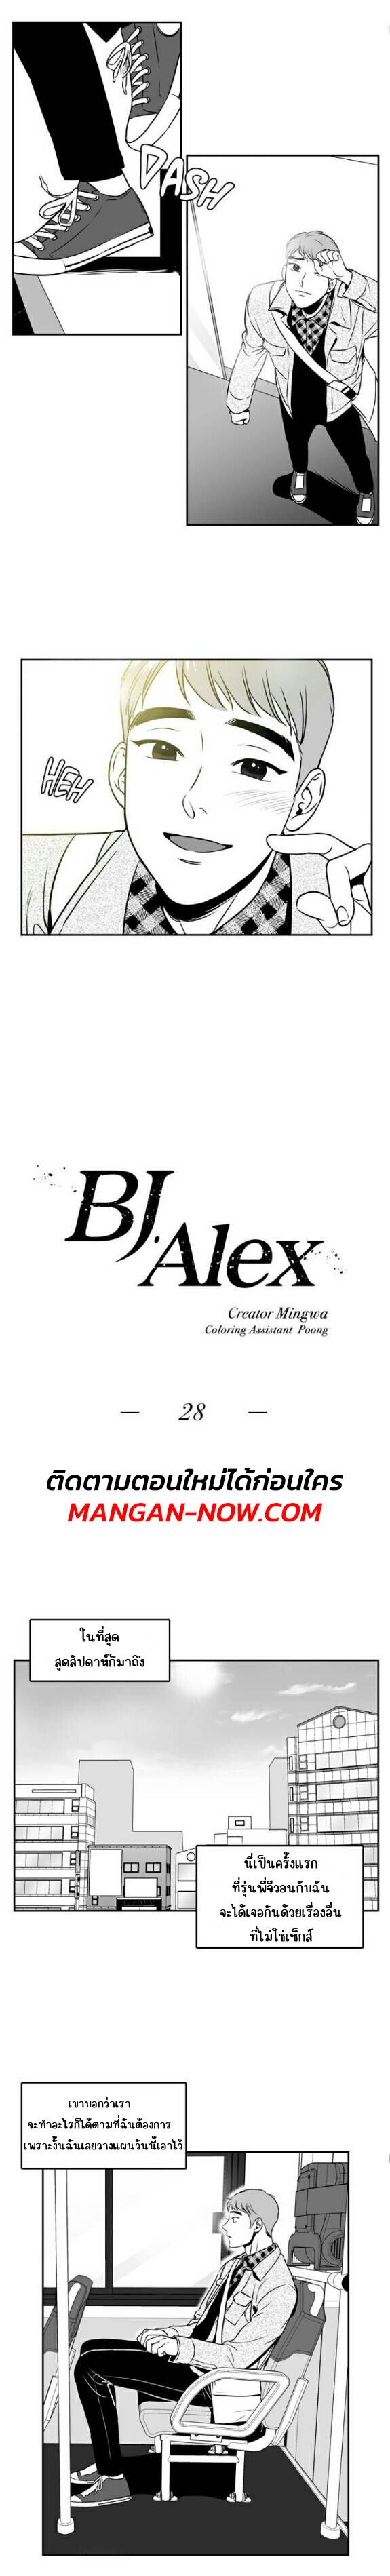 BJ Alex 28 02